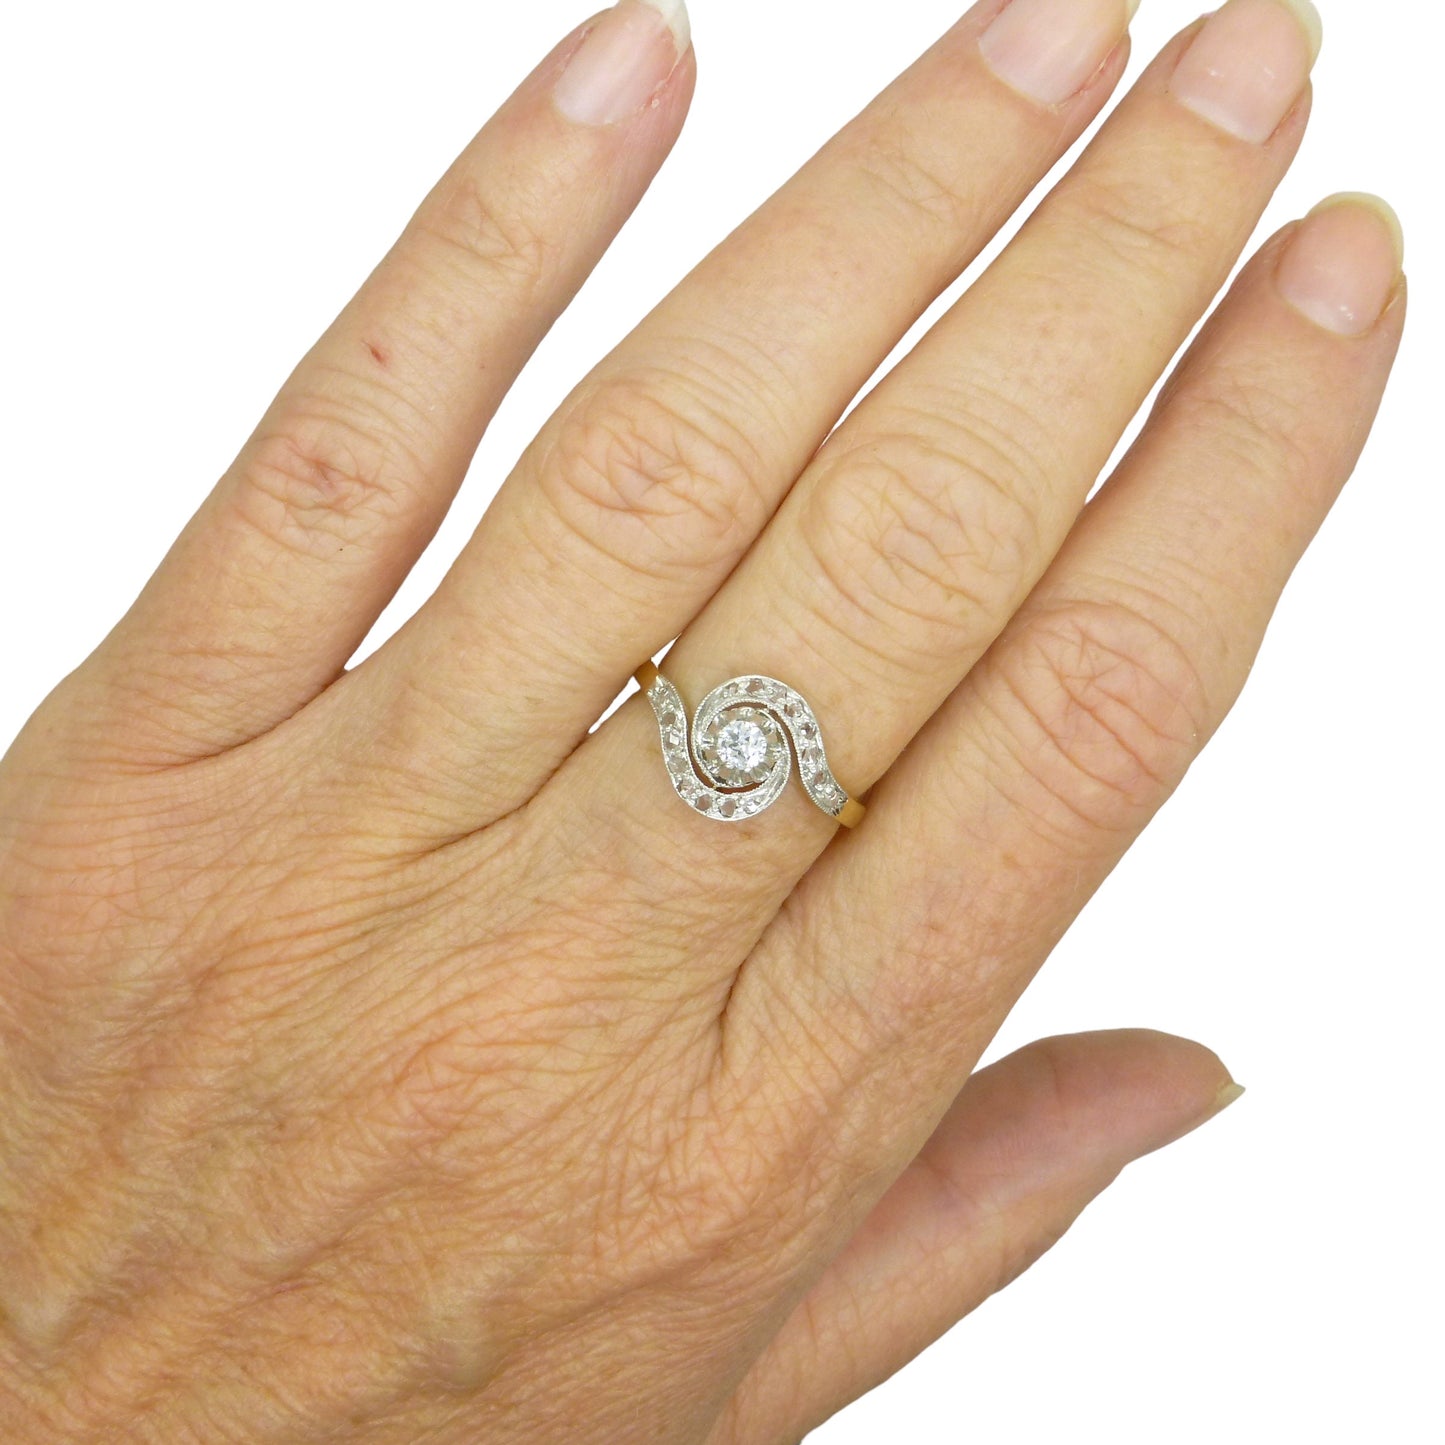 Antique French 18ct diamond tourbillon solitaire ring ~ Edwardian - Belle Èpoque c1900-1910